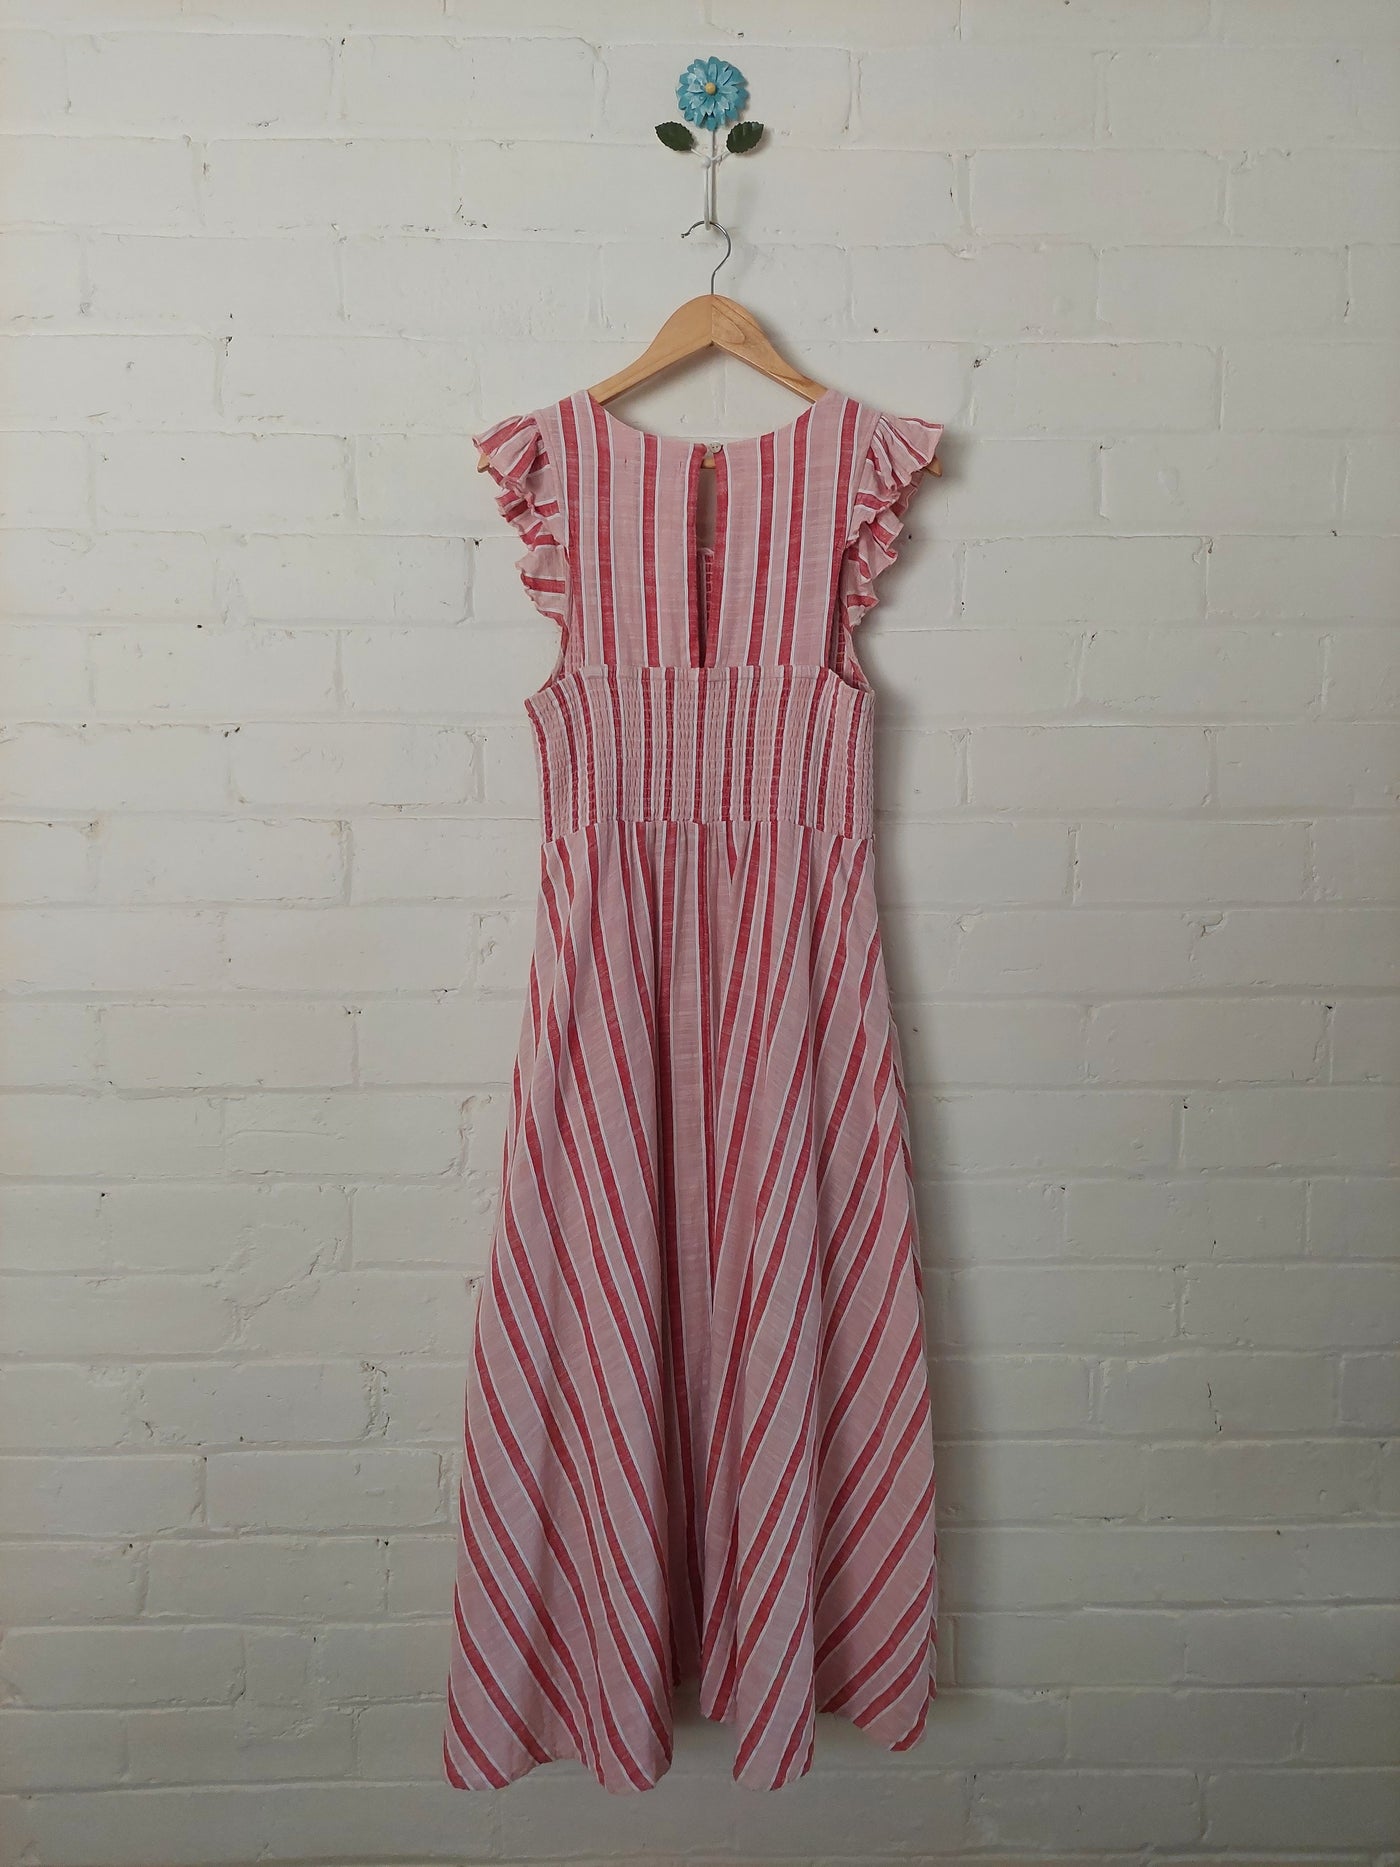 Mister Zimi 'Abbie' Midi Dress in Pink Stripe, Size 14